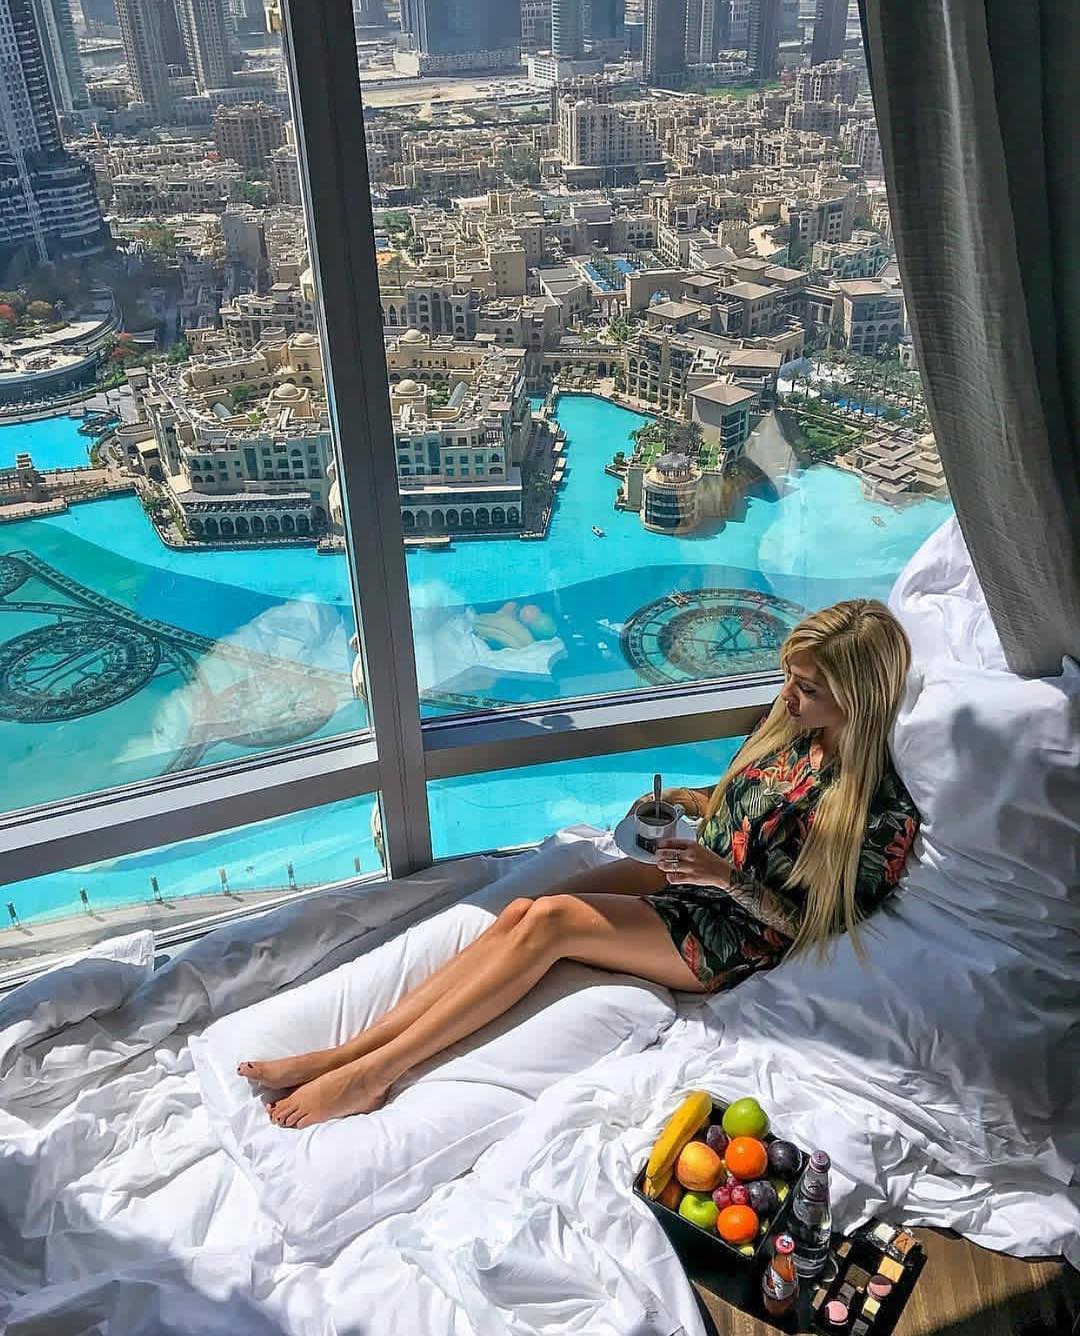 1080x1336, 252 Kb / женщина, постель, фрукты, вид из окна, окно, город, Дубаи, здания, бассейны